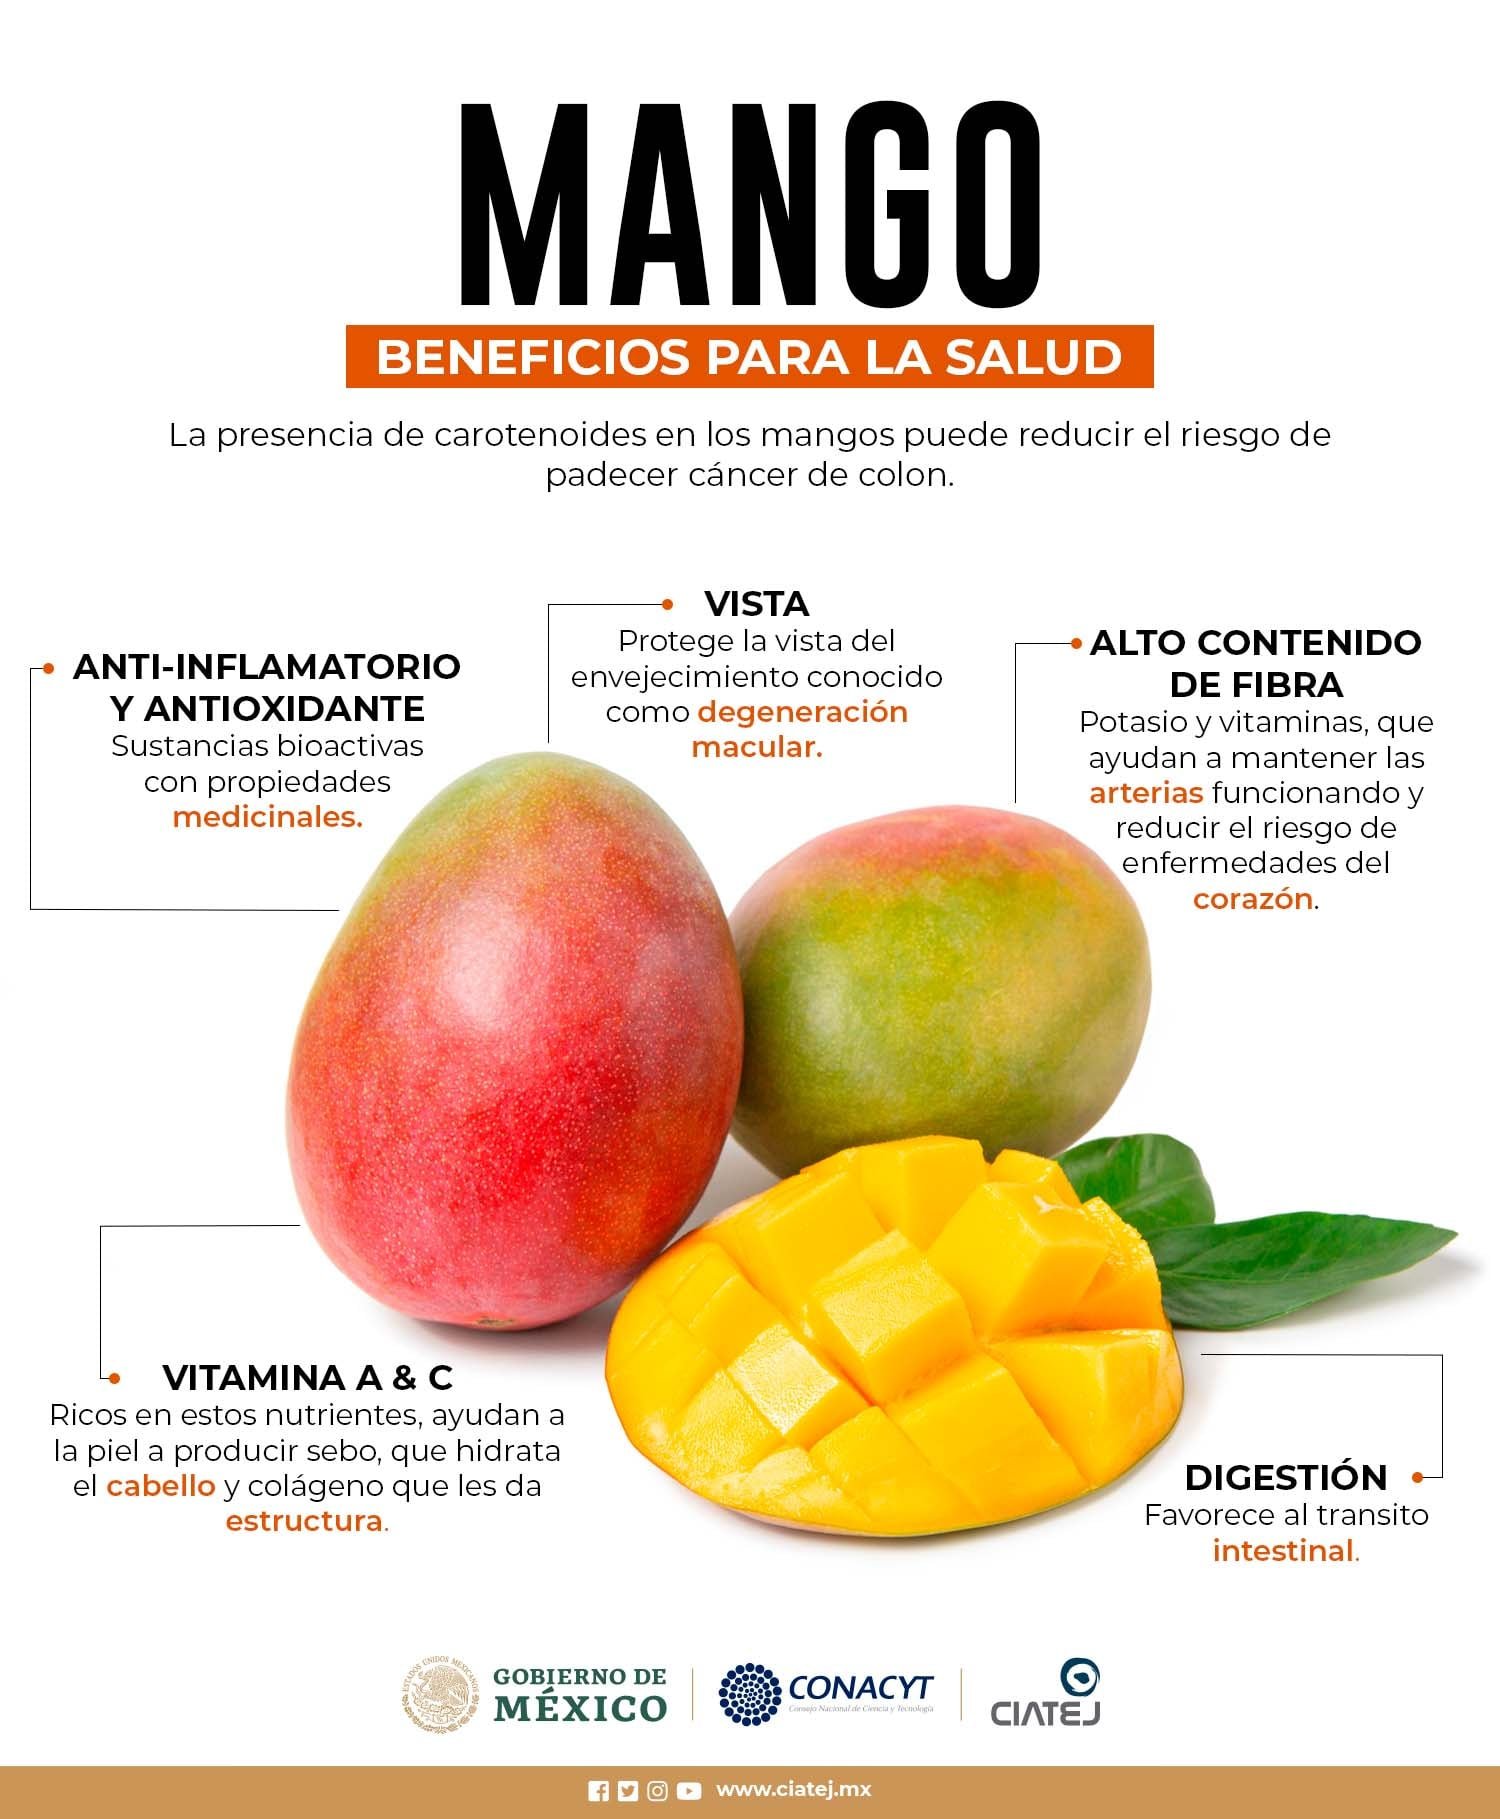 Indulgente lista Verde CIATEJ A.C. on Twitter: "El contenido de vitaminas y minerales del #mango  🥭🥭 hacen que sea una fruta con varios beneficios para la salud si  consumimos esta fruta con regularidad #Enterate 👇